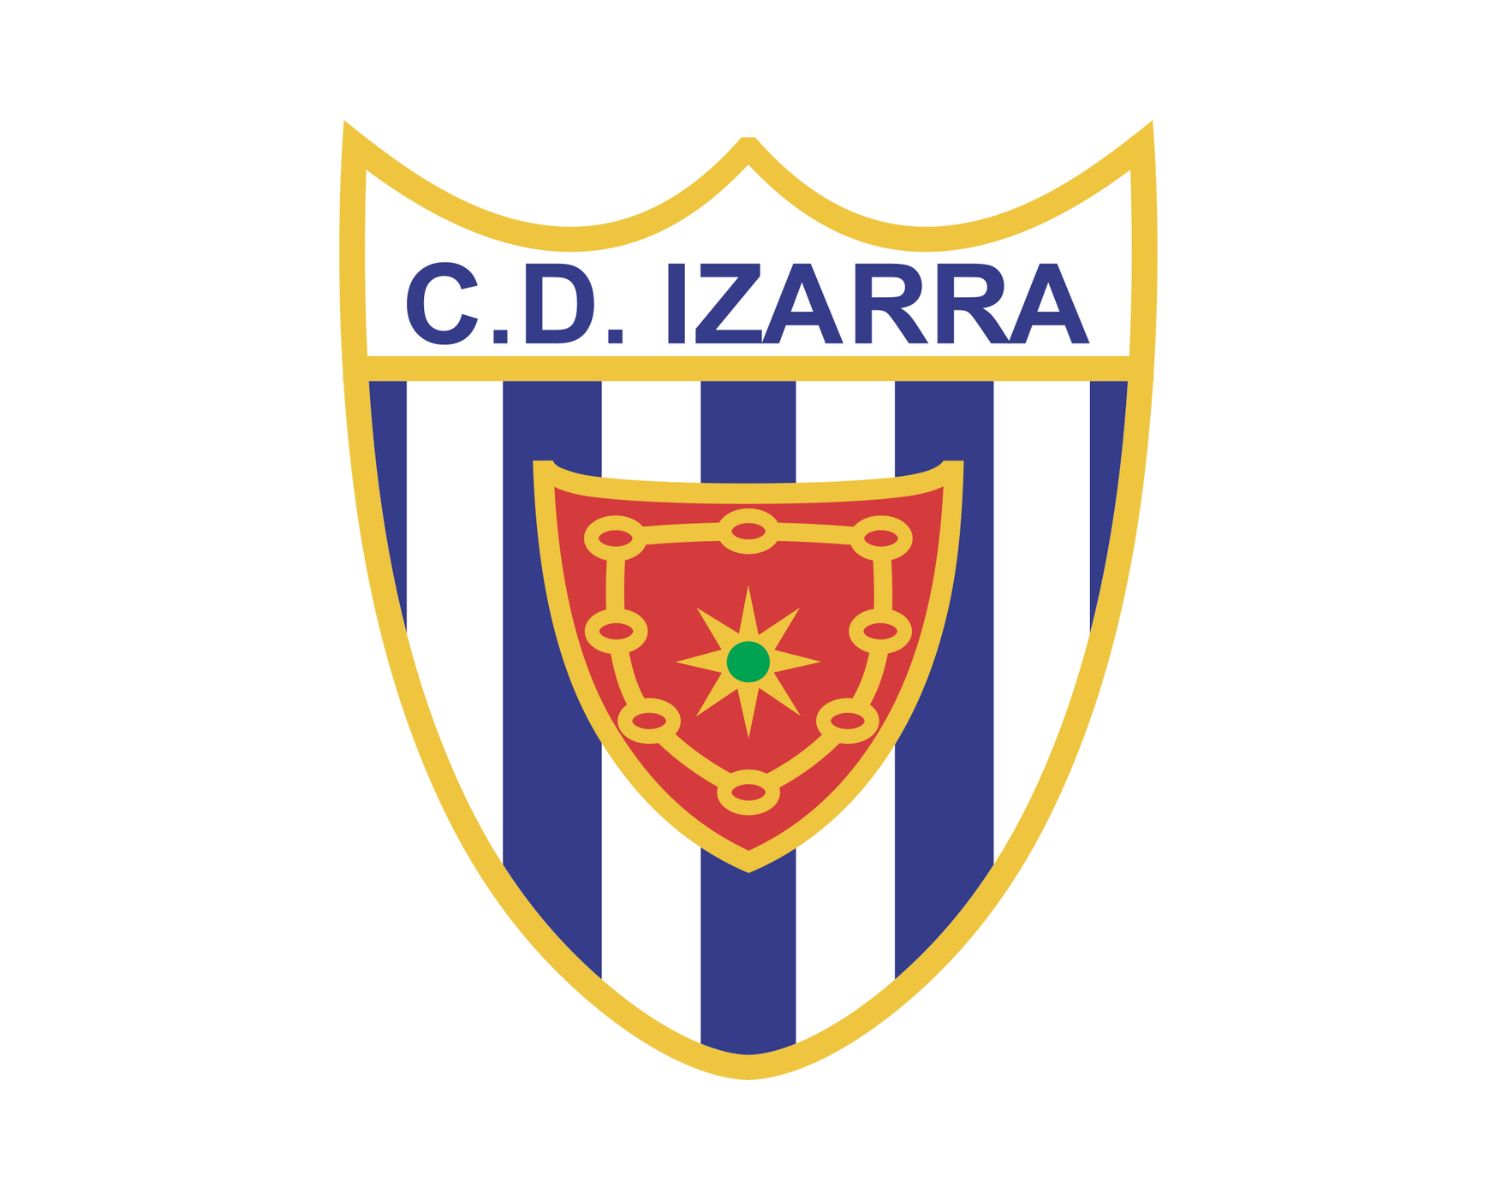 cd-izarra-22-football-club-facts